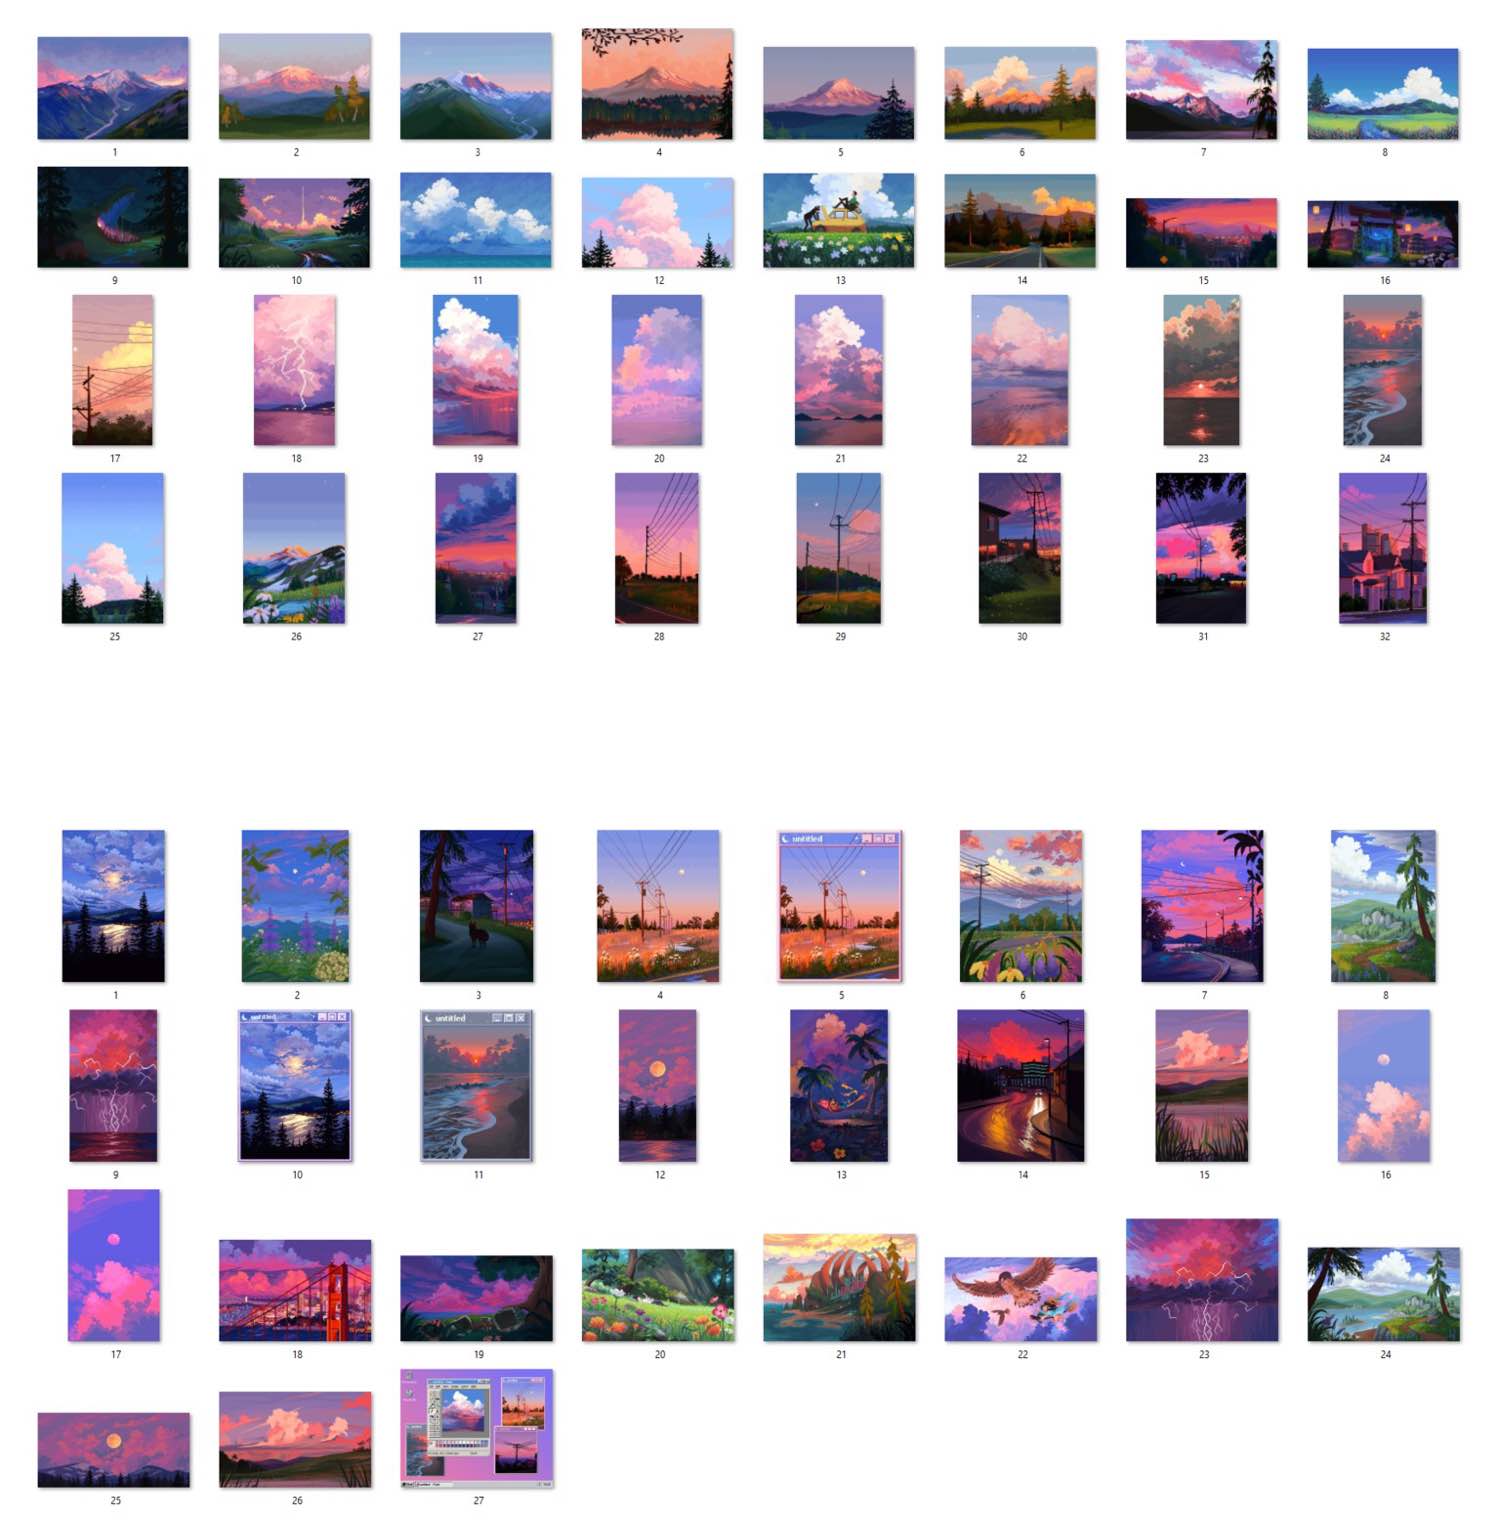 8pxl-hd-pixel-art-wallpaper-packs-contents